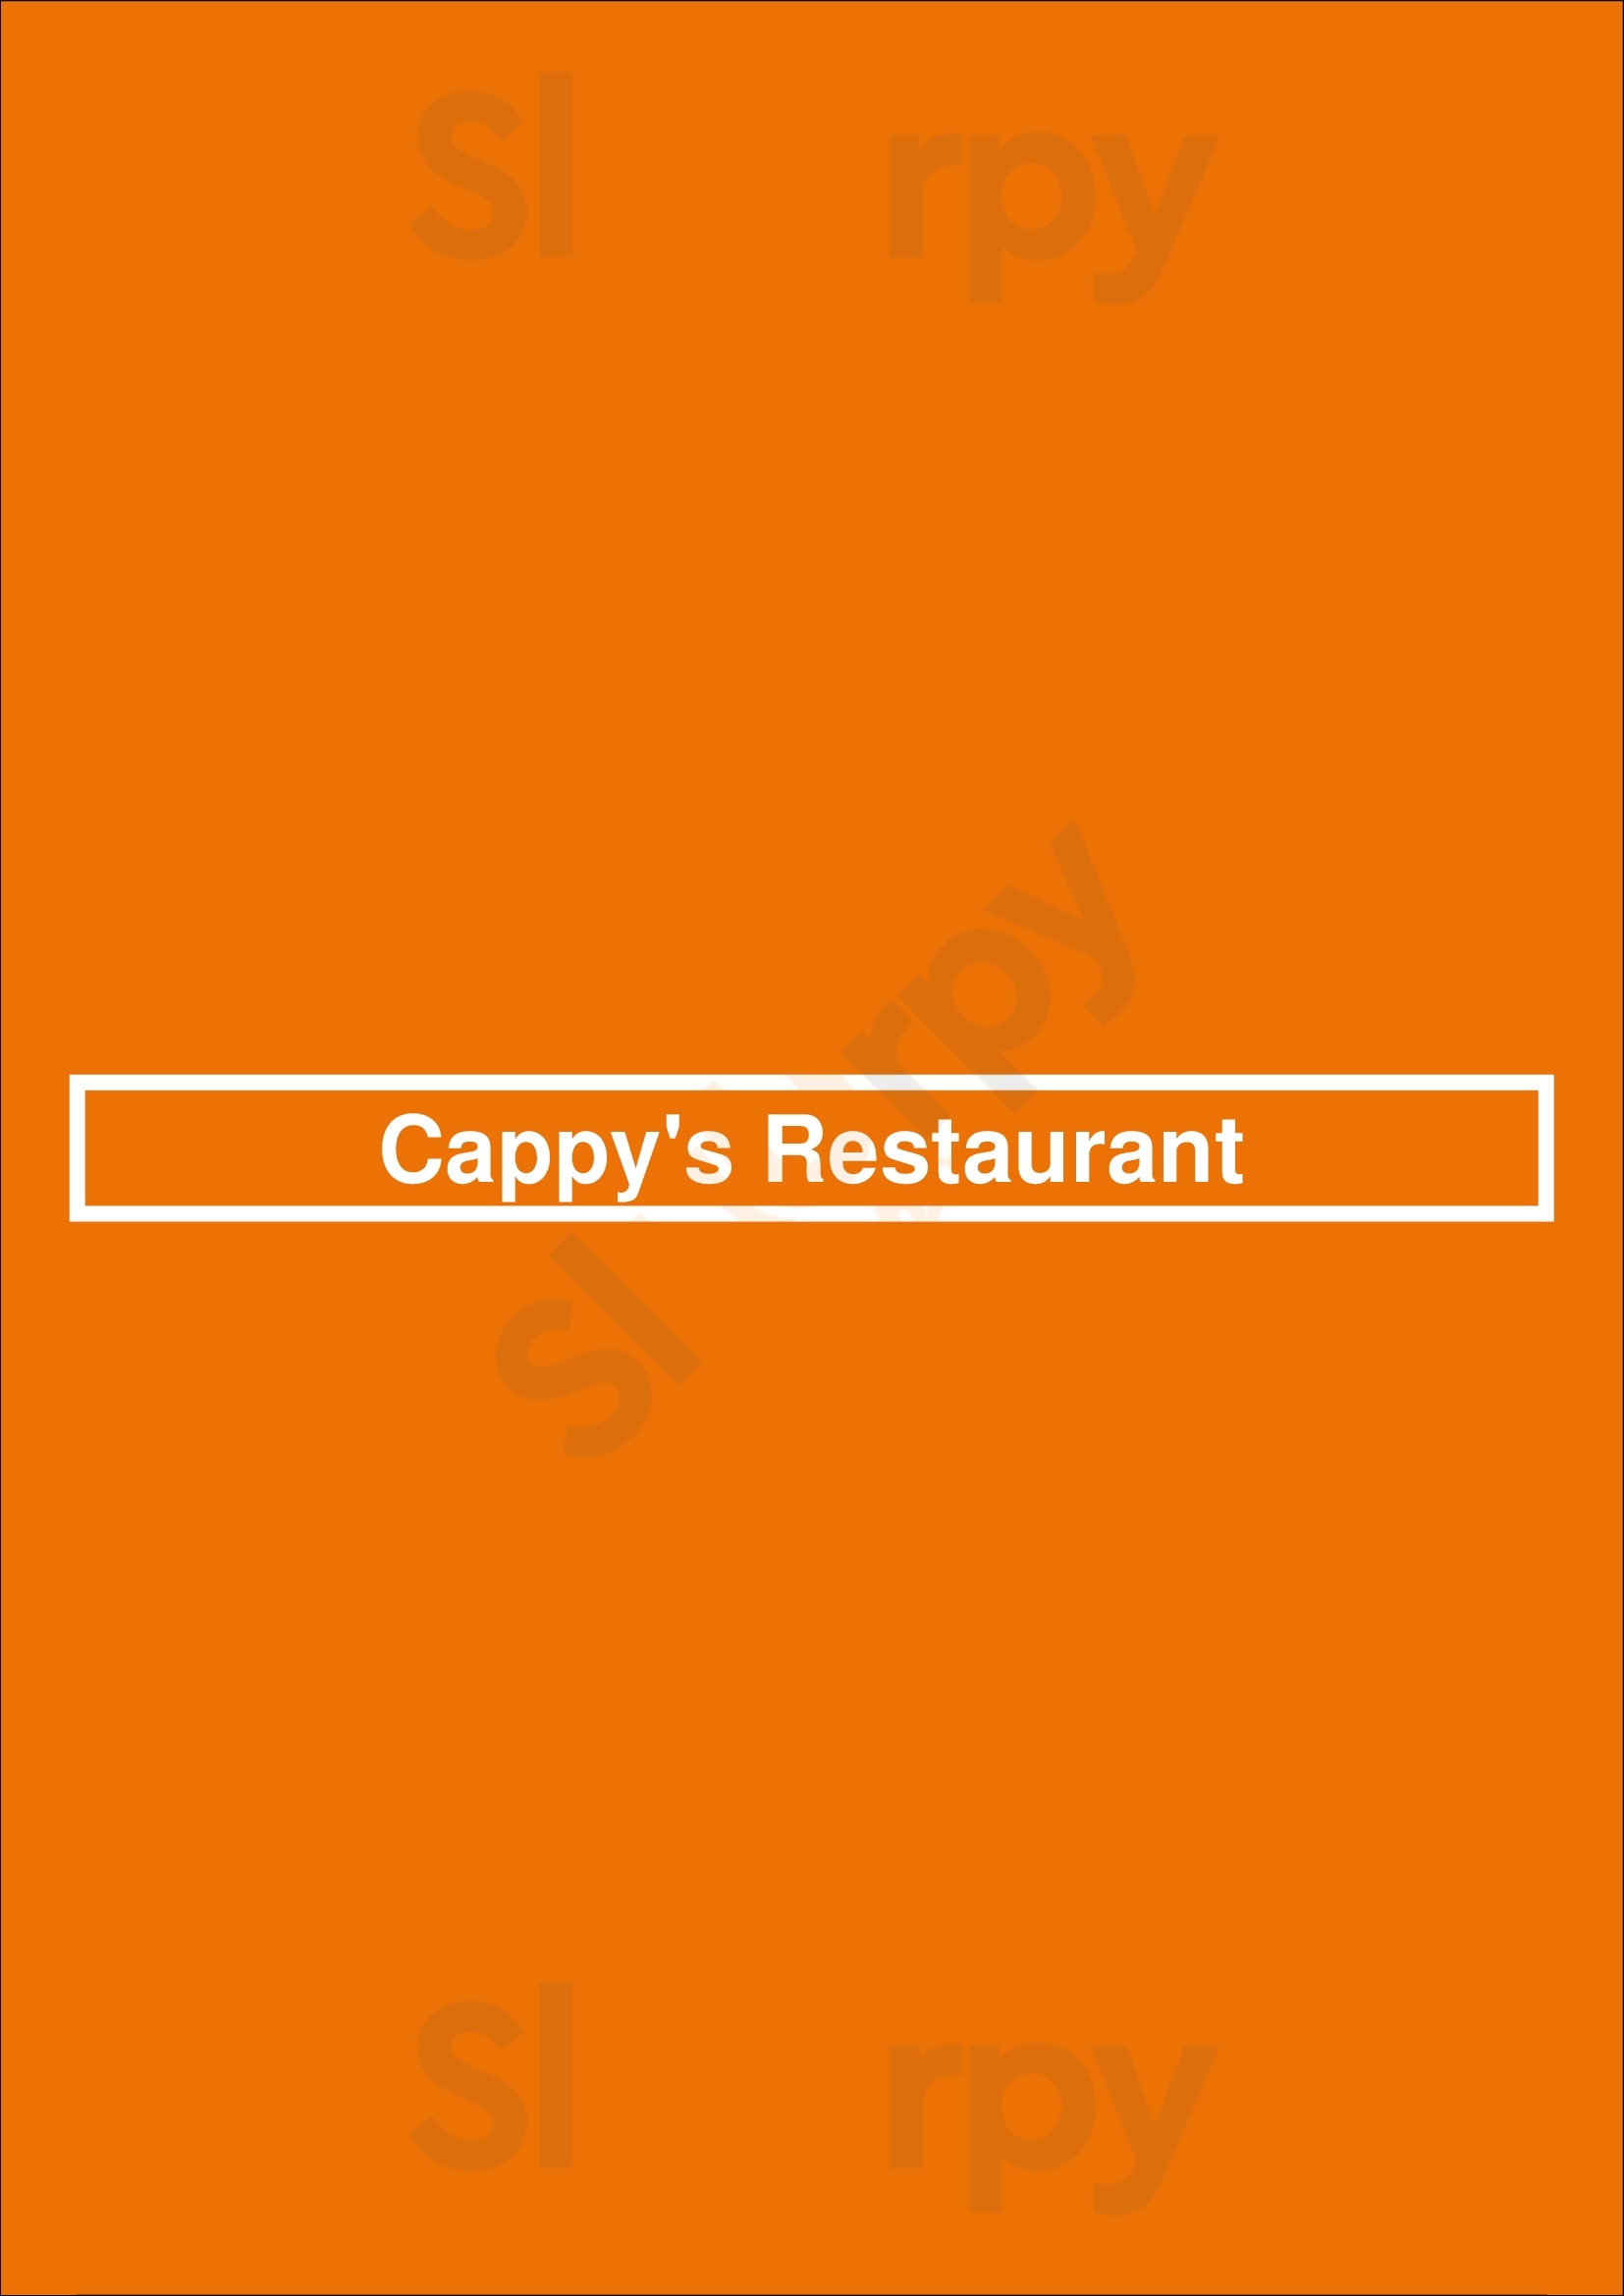 Cappy's Restaurant San Antonio Menu - 1